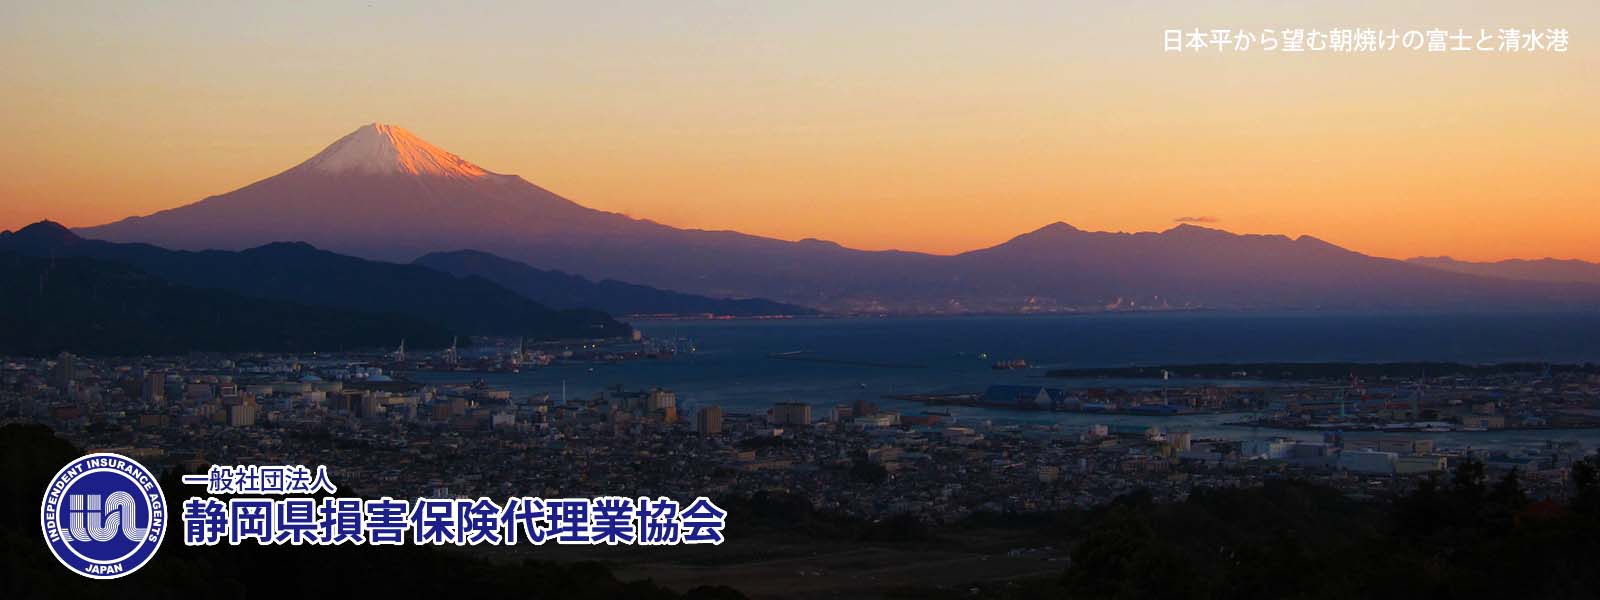 日本平から望む富士山と清水港の朝焼け